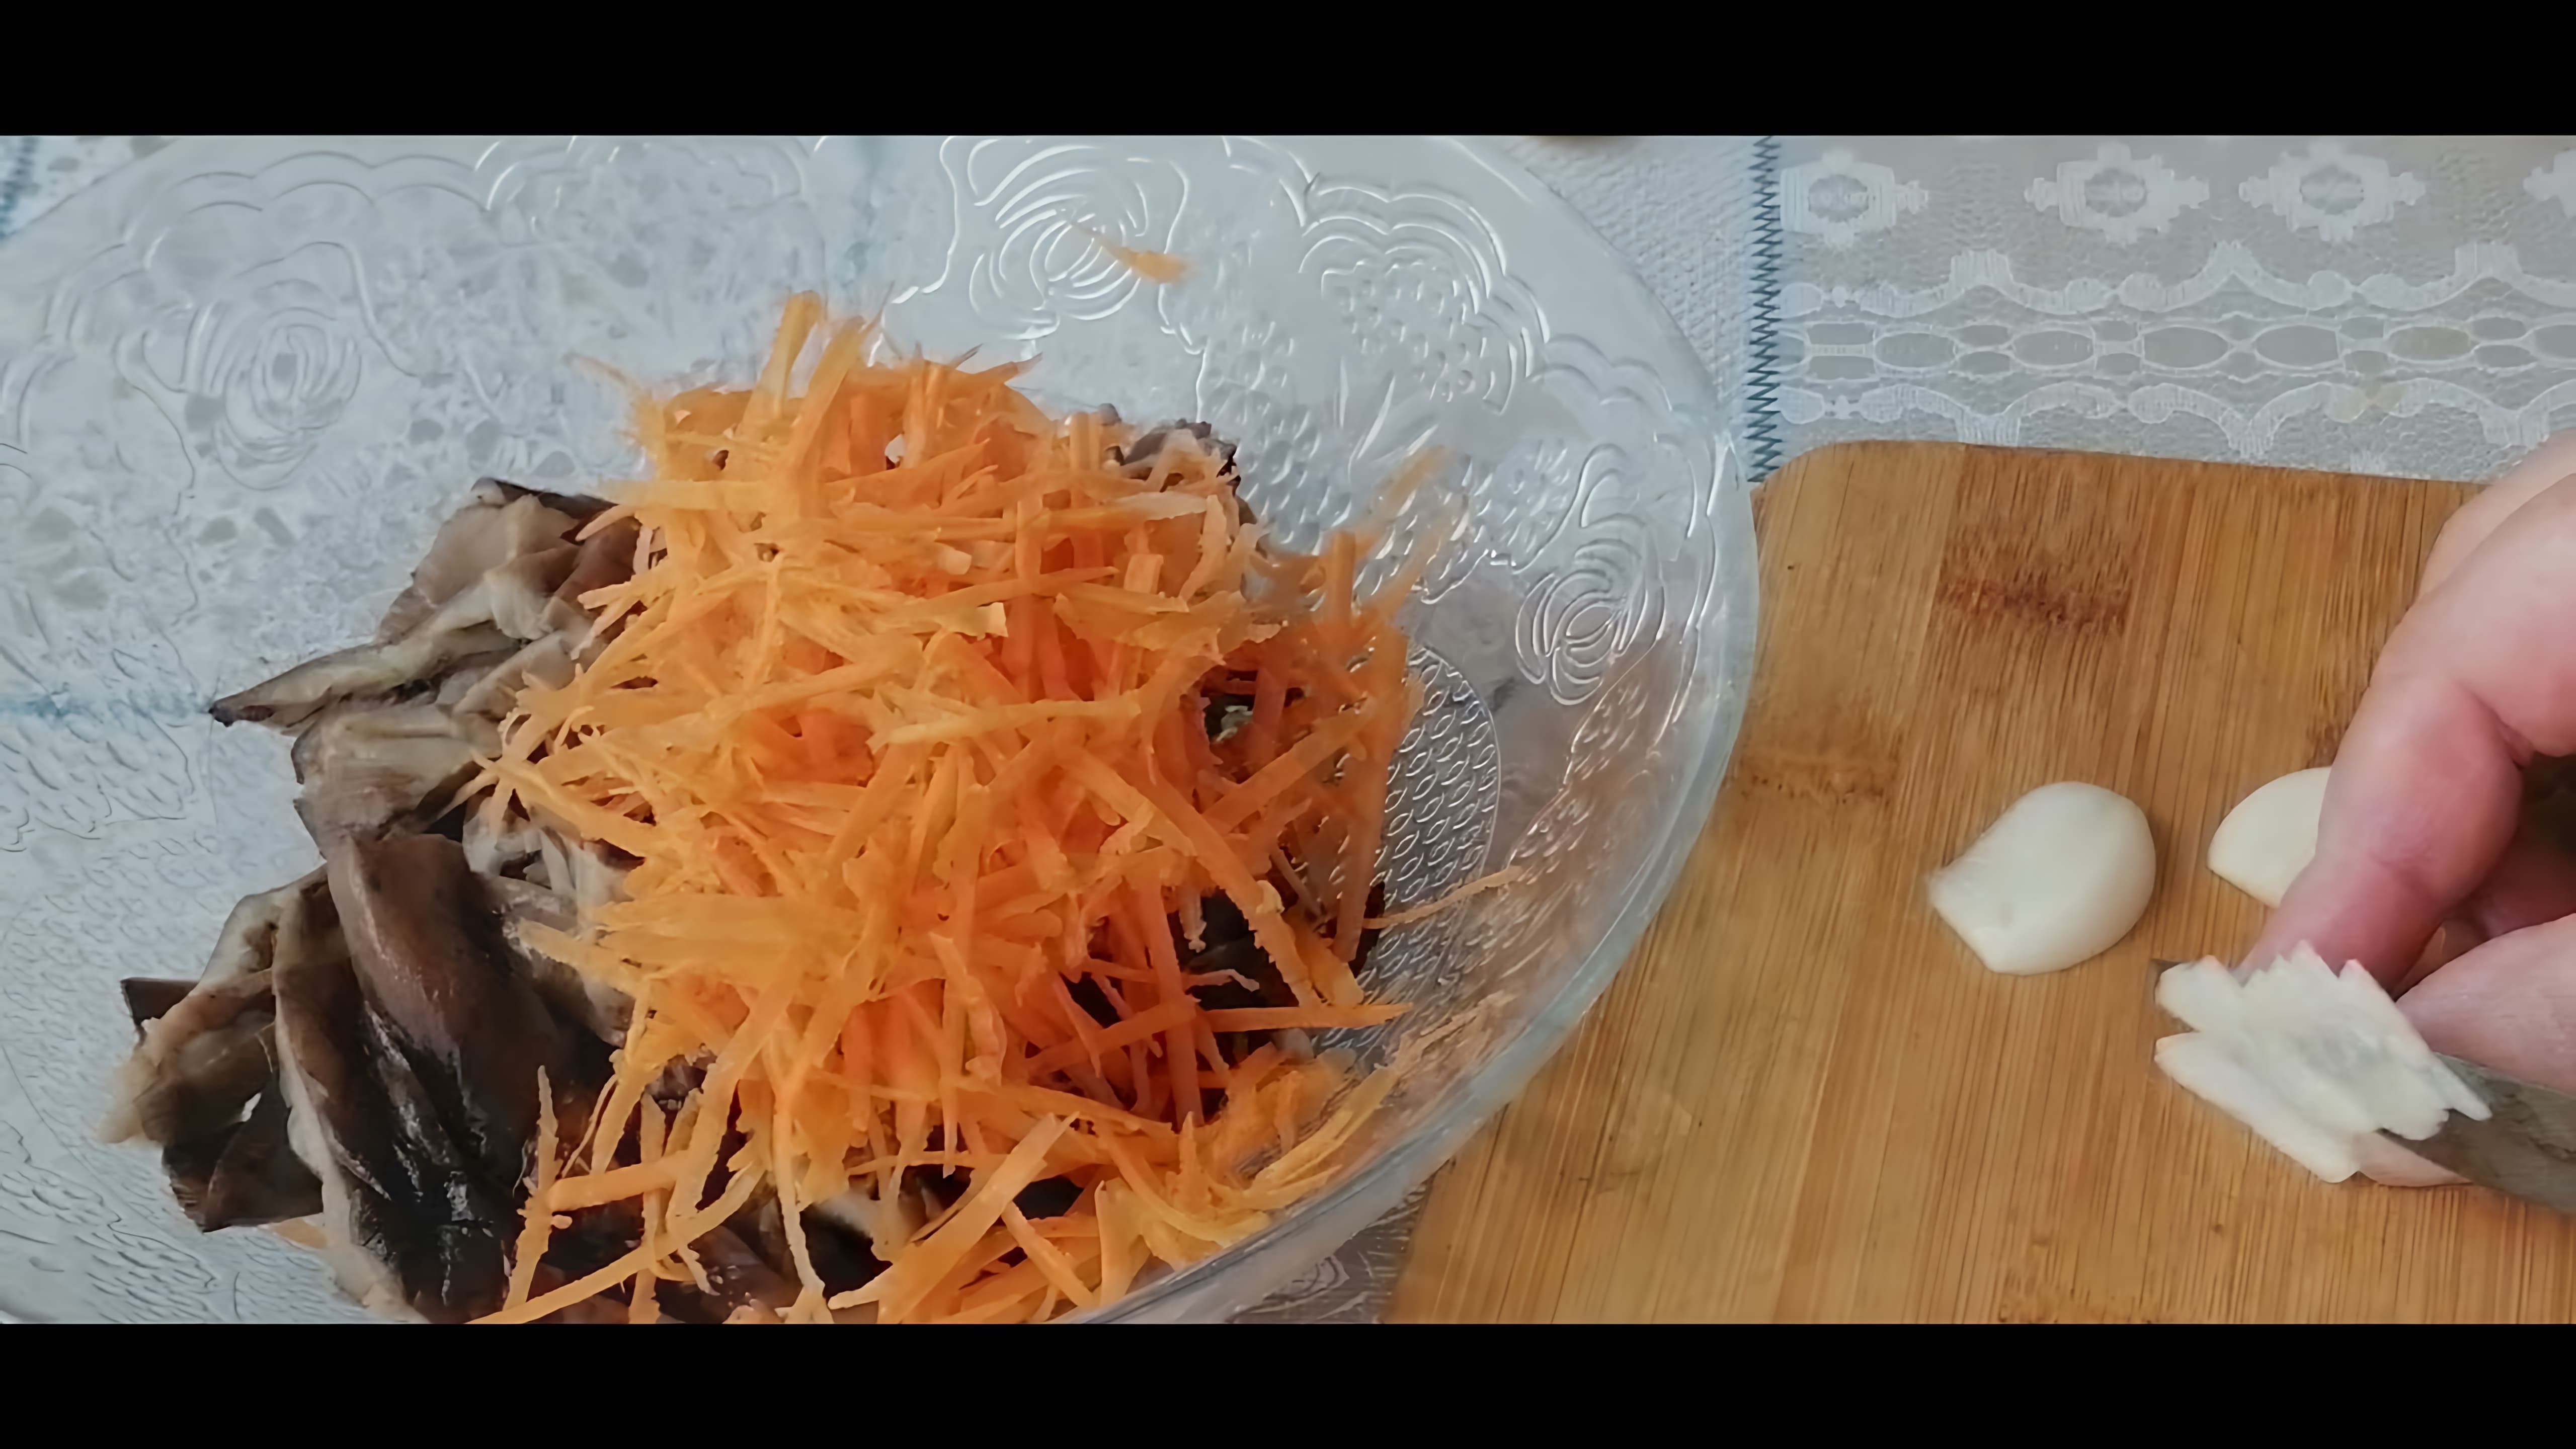 В этом видео демонстрируется процесс приготовления оригинальной закуски из переросших опят